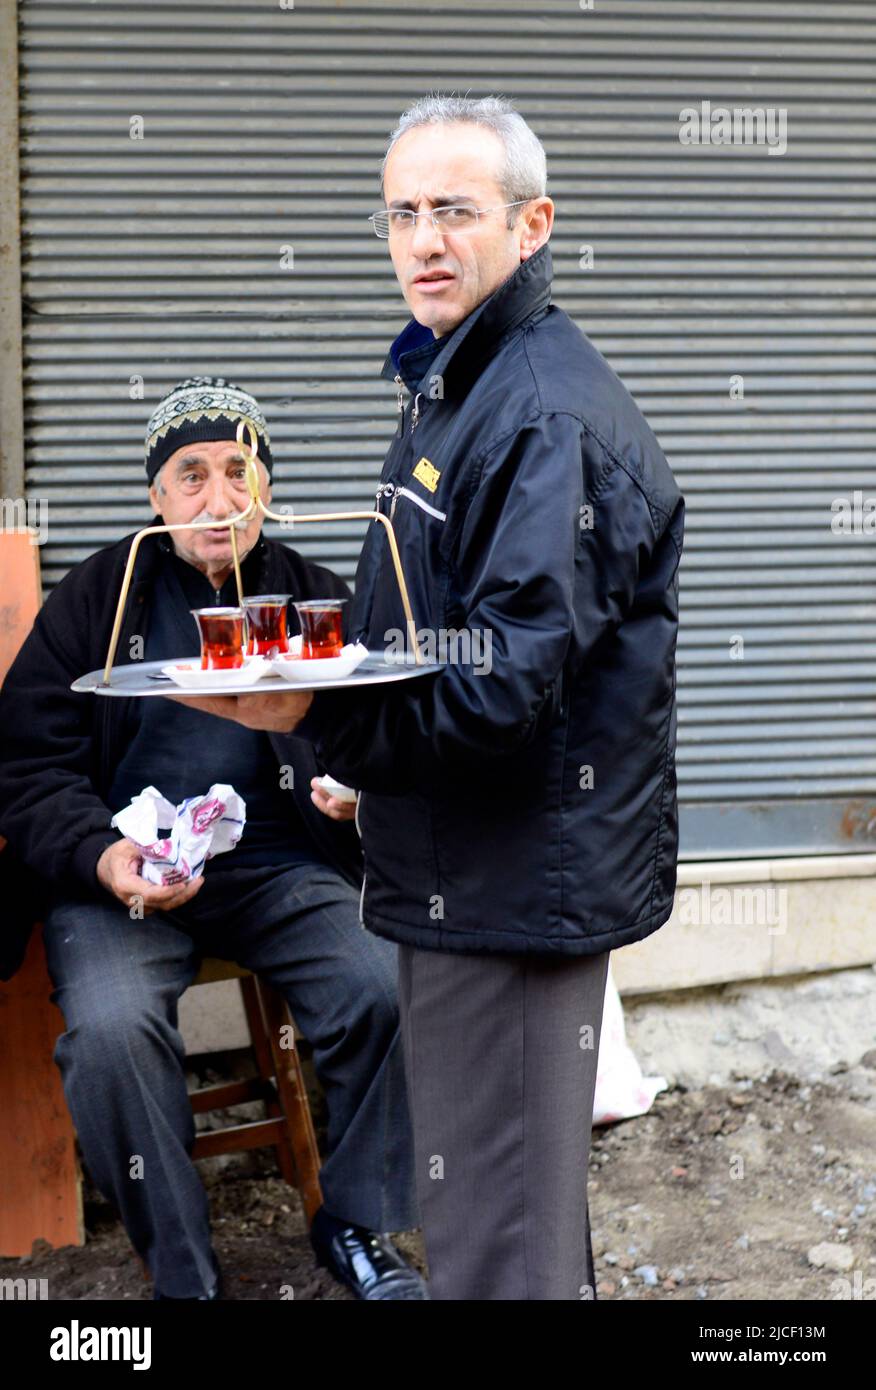 Un hombre turco sirve té en una pequeña tienda de té en Estambul, Turquía. Foto de stock